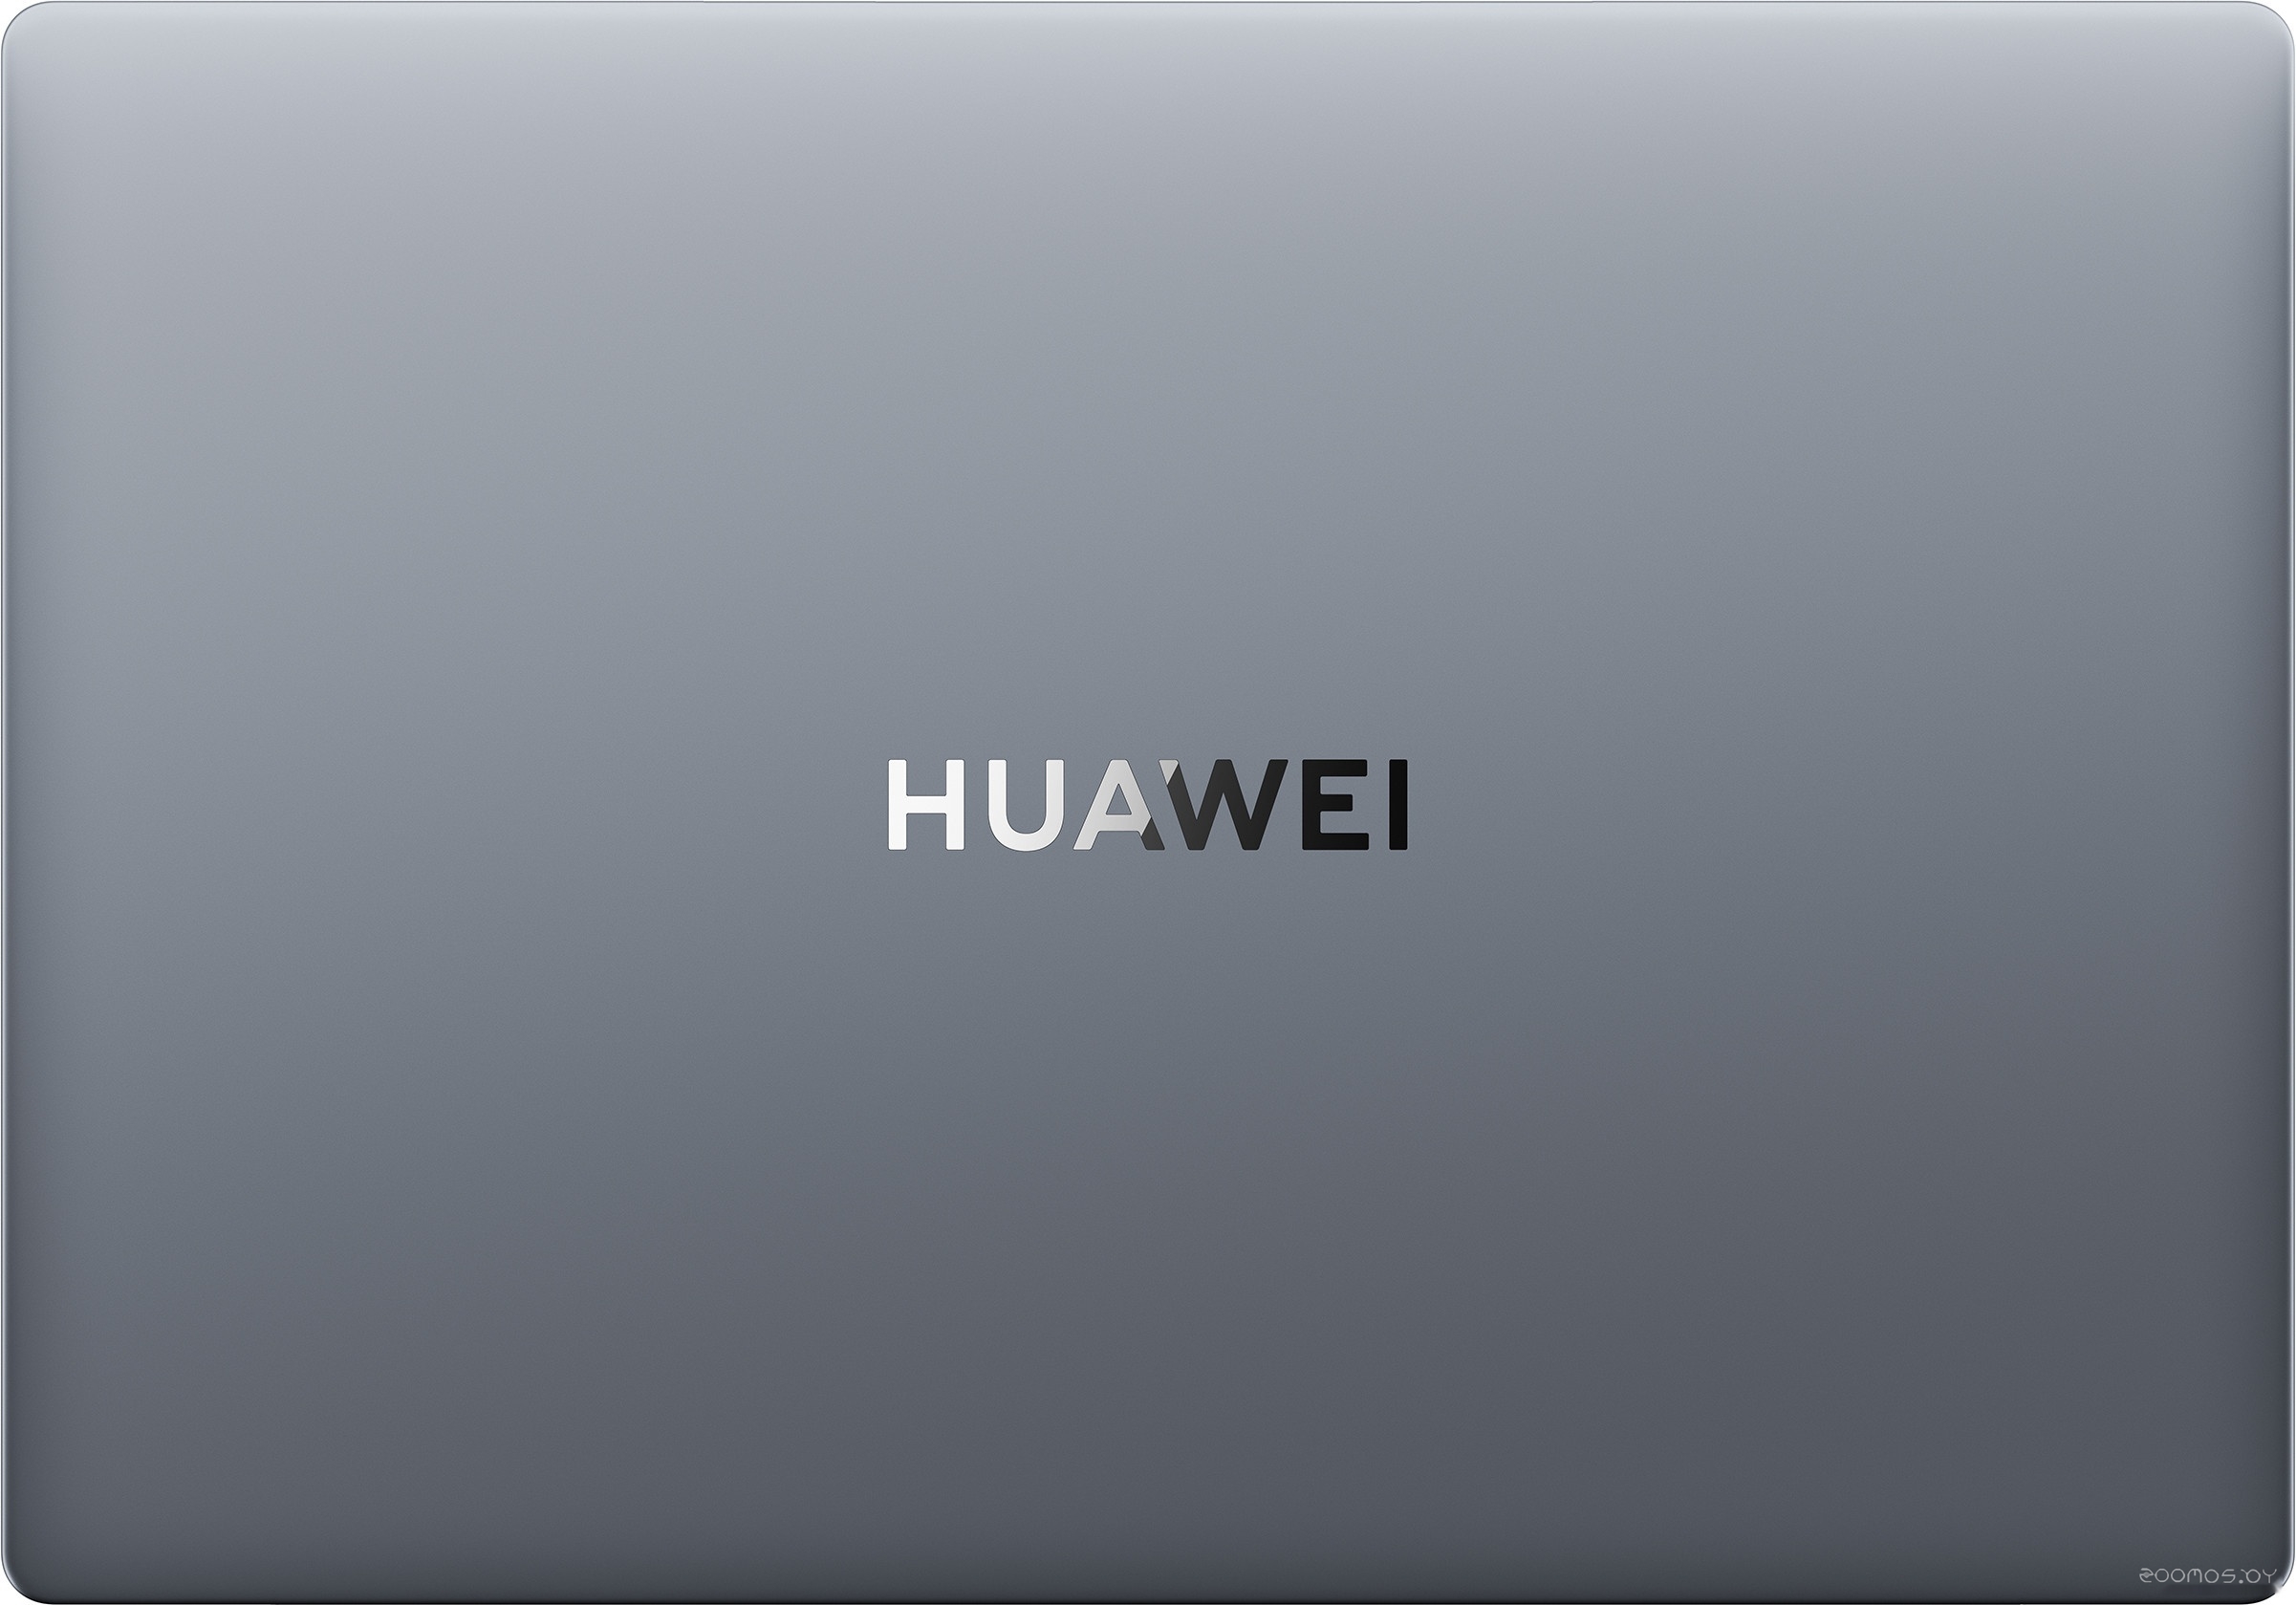  Huawei MateBook D 15 BODE-WFH9 53013WRN     